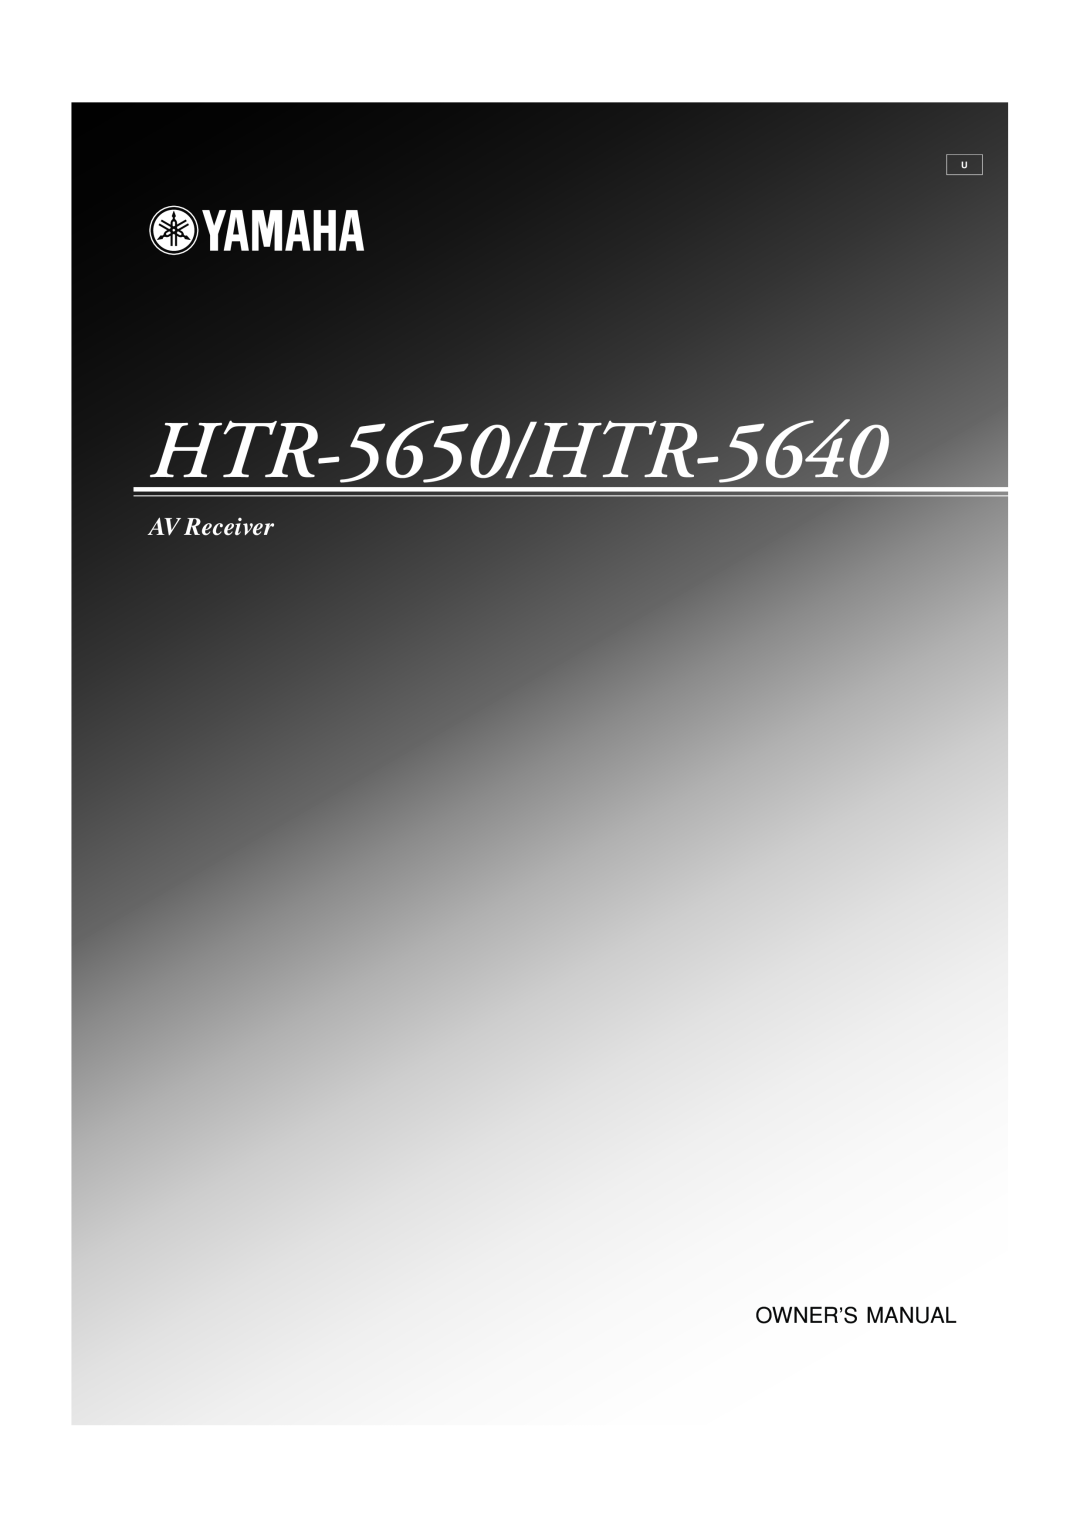 Yamaha owner manual HTR-5650/HTR-5640, AV Receiver 